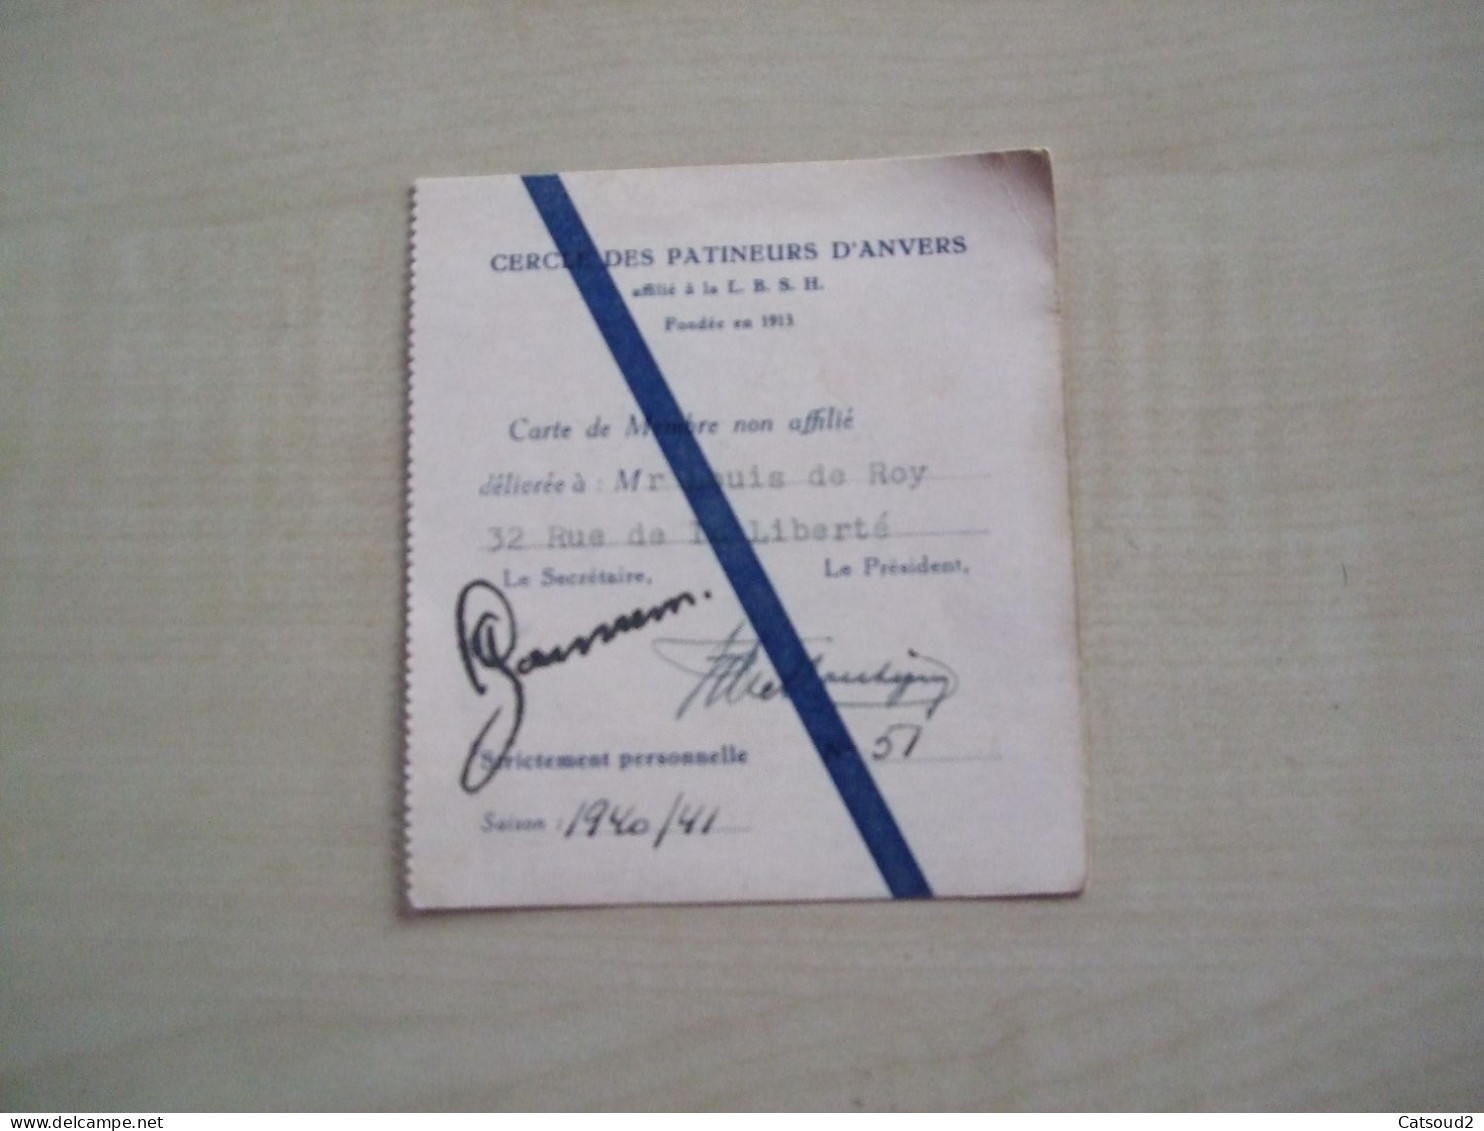 Carte De Membre Ancienne 1940/41 CERCLE DES PATINEURS D'ANVERS - Mitgliedskarten